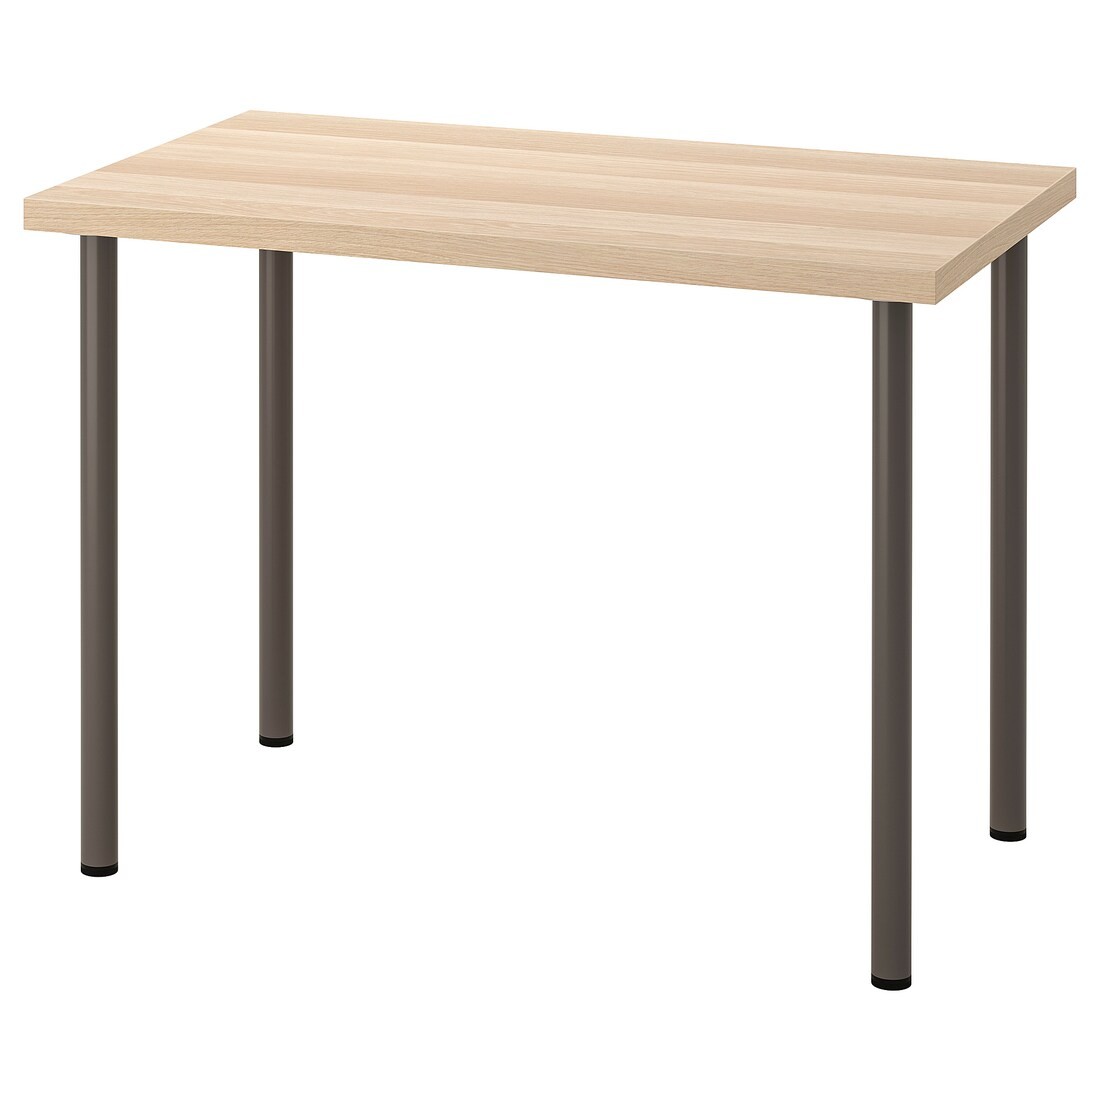 IKEA LINNMON ЛИННМОН / ADILS АДИЛЬС Письменный стол, под беленый дуб / темно-серый, 100x60 см 79416341 794.163.41